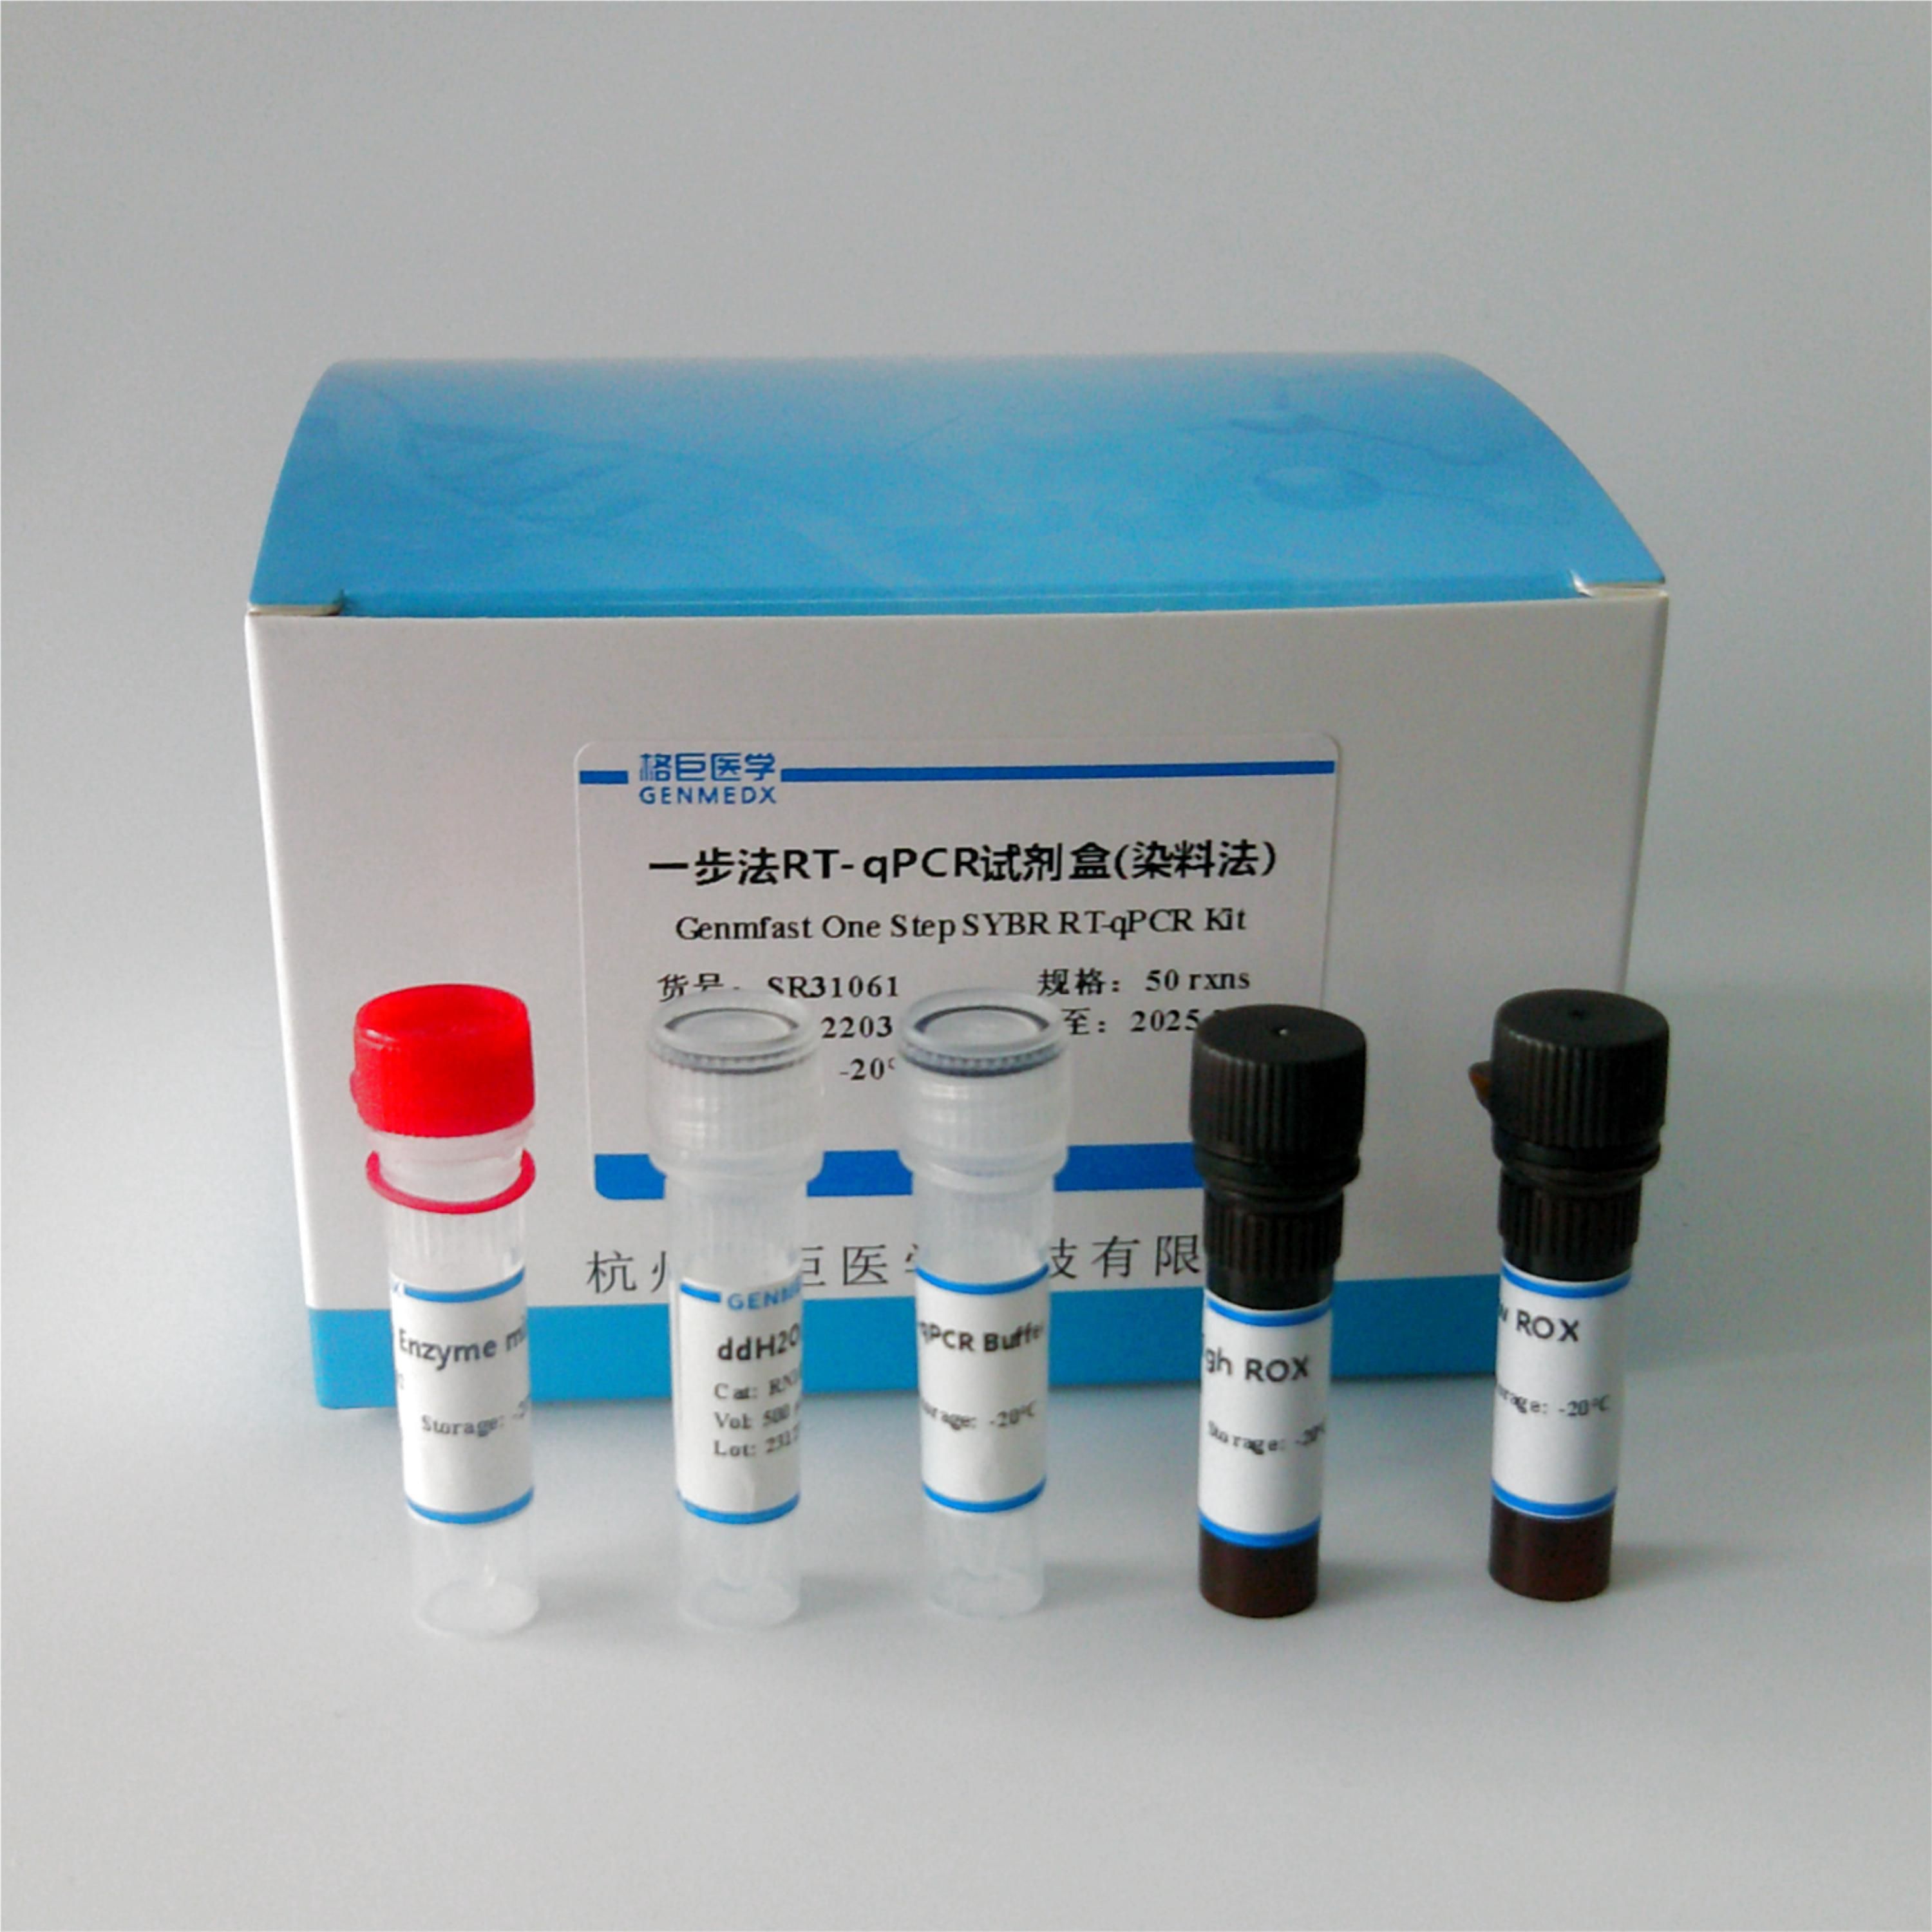 一步法RT-qPCR试剂盒（染料法Genmfast One Step SYBR RT-qPCR Kit）